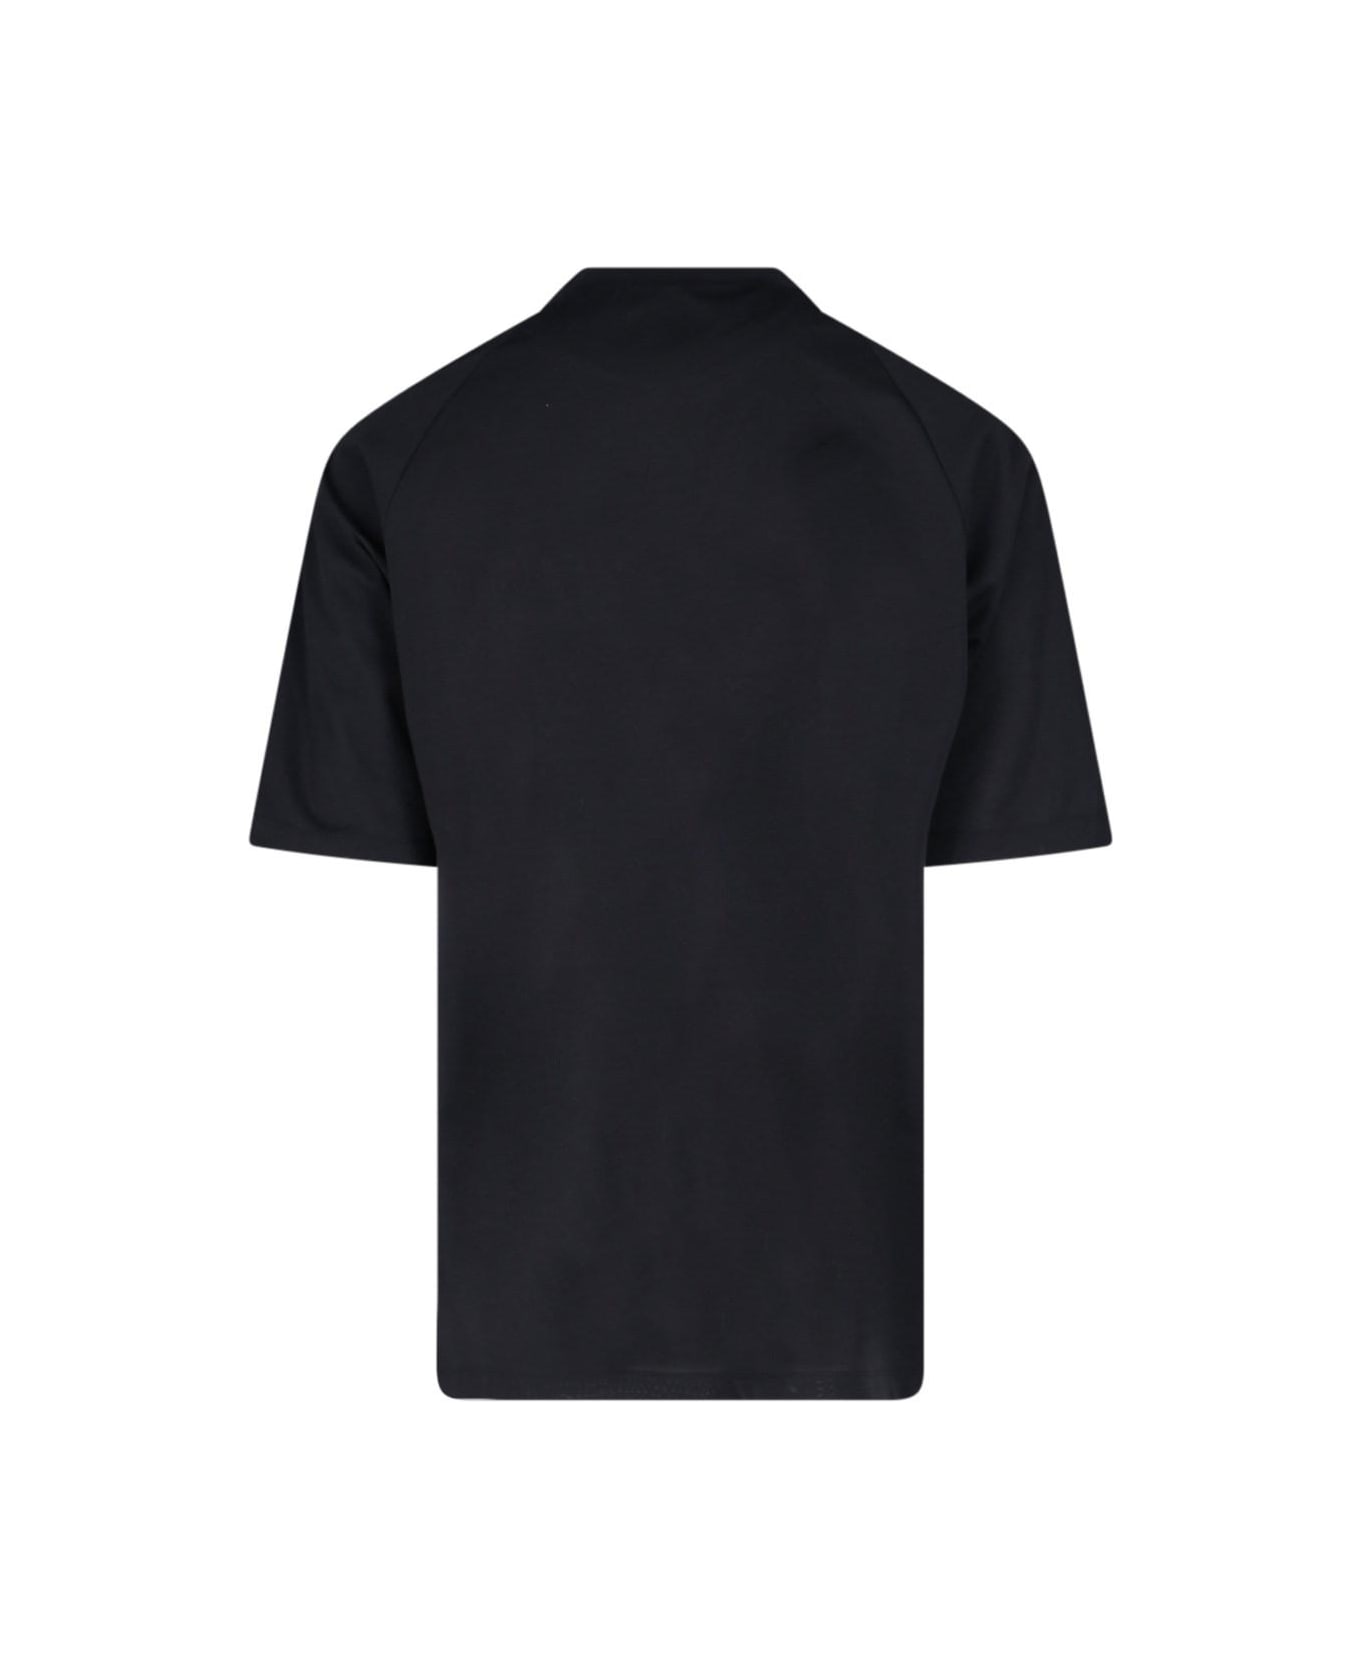 Y-3 '3 Stripes' T-shirt - Black シャツ